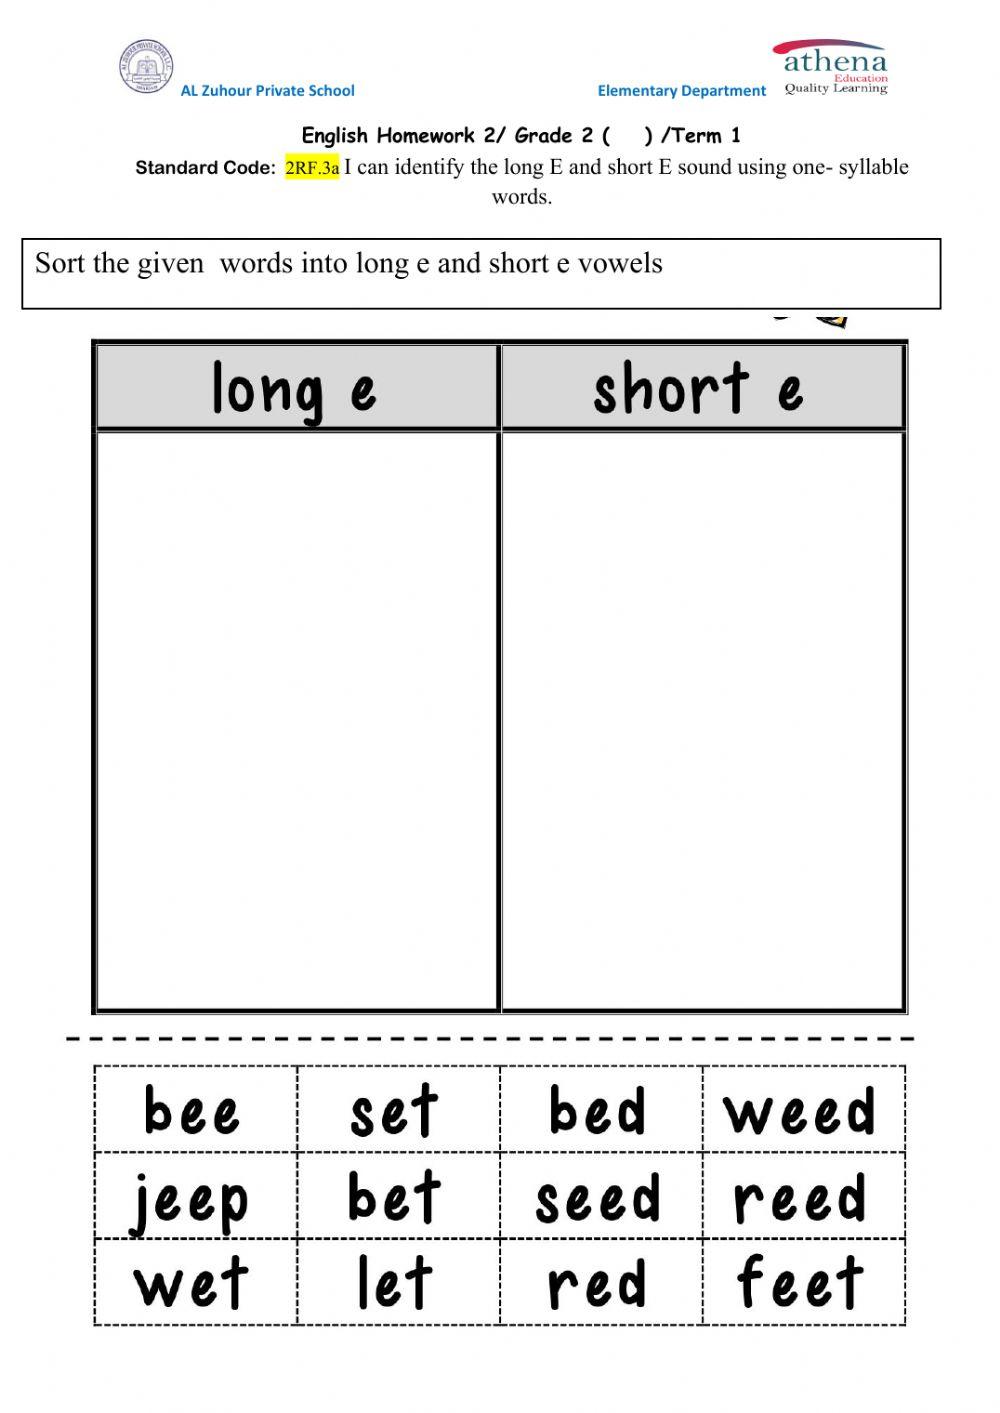 Short vowels